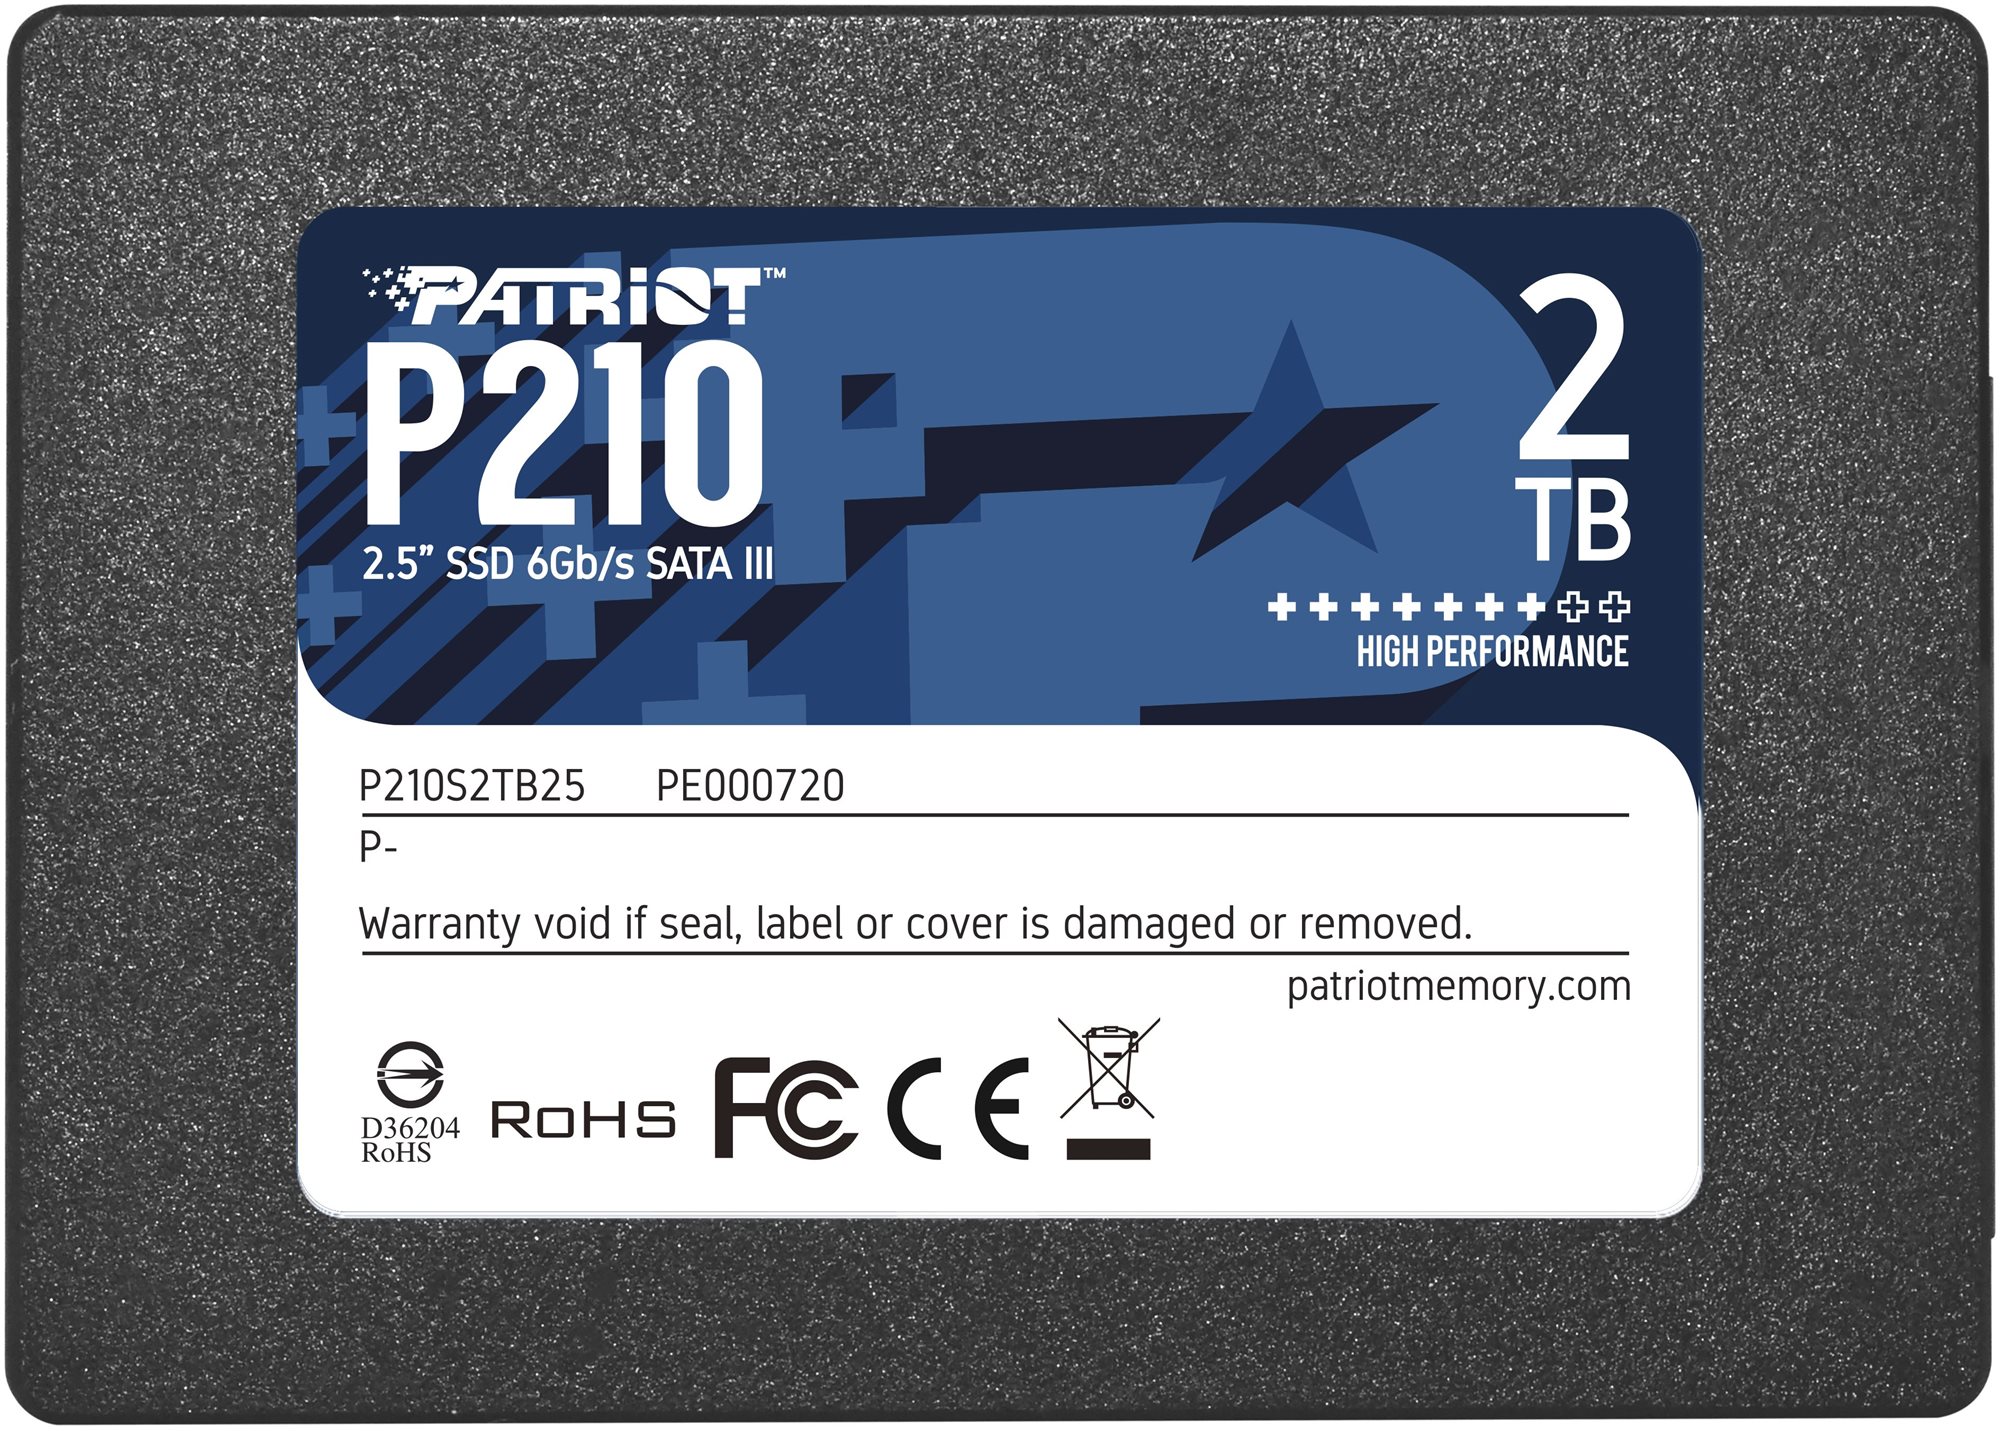 Patriot P210 2TB